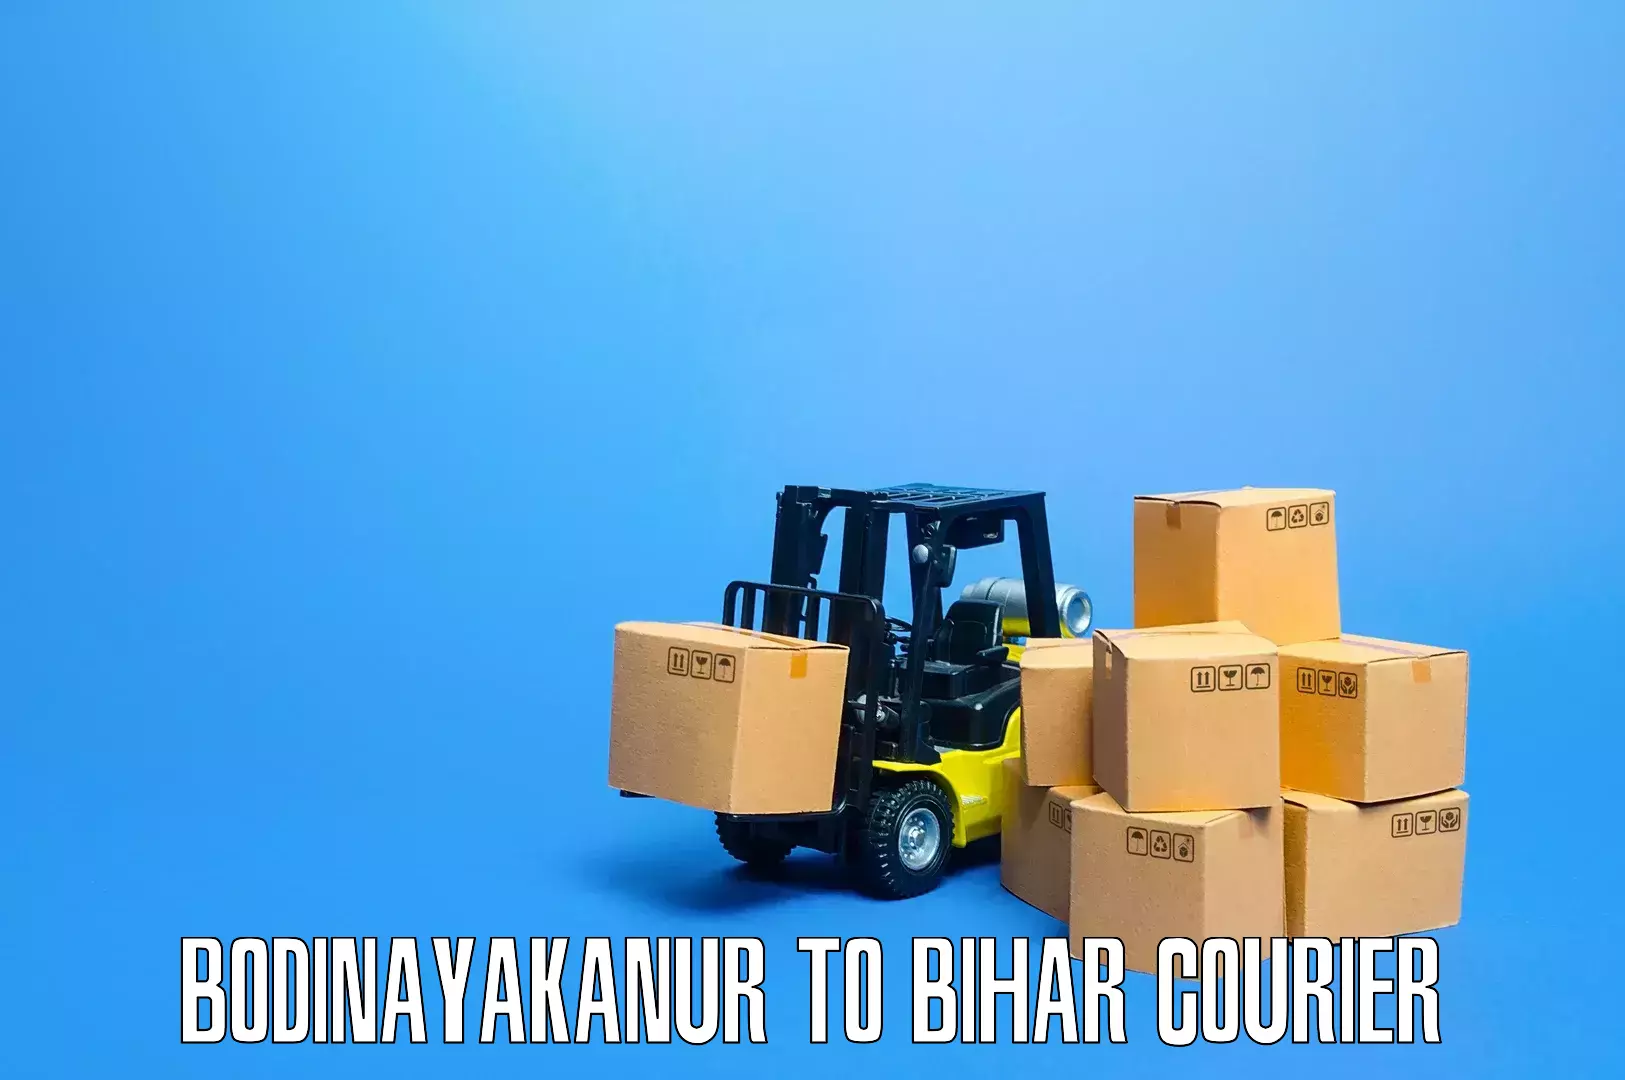 Furniture moving experts Bodinayakanur to Minapur